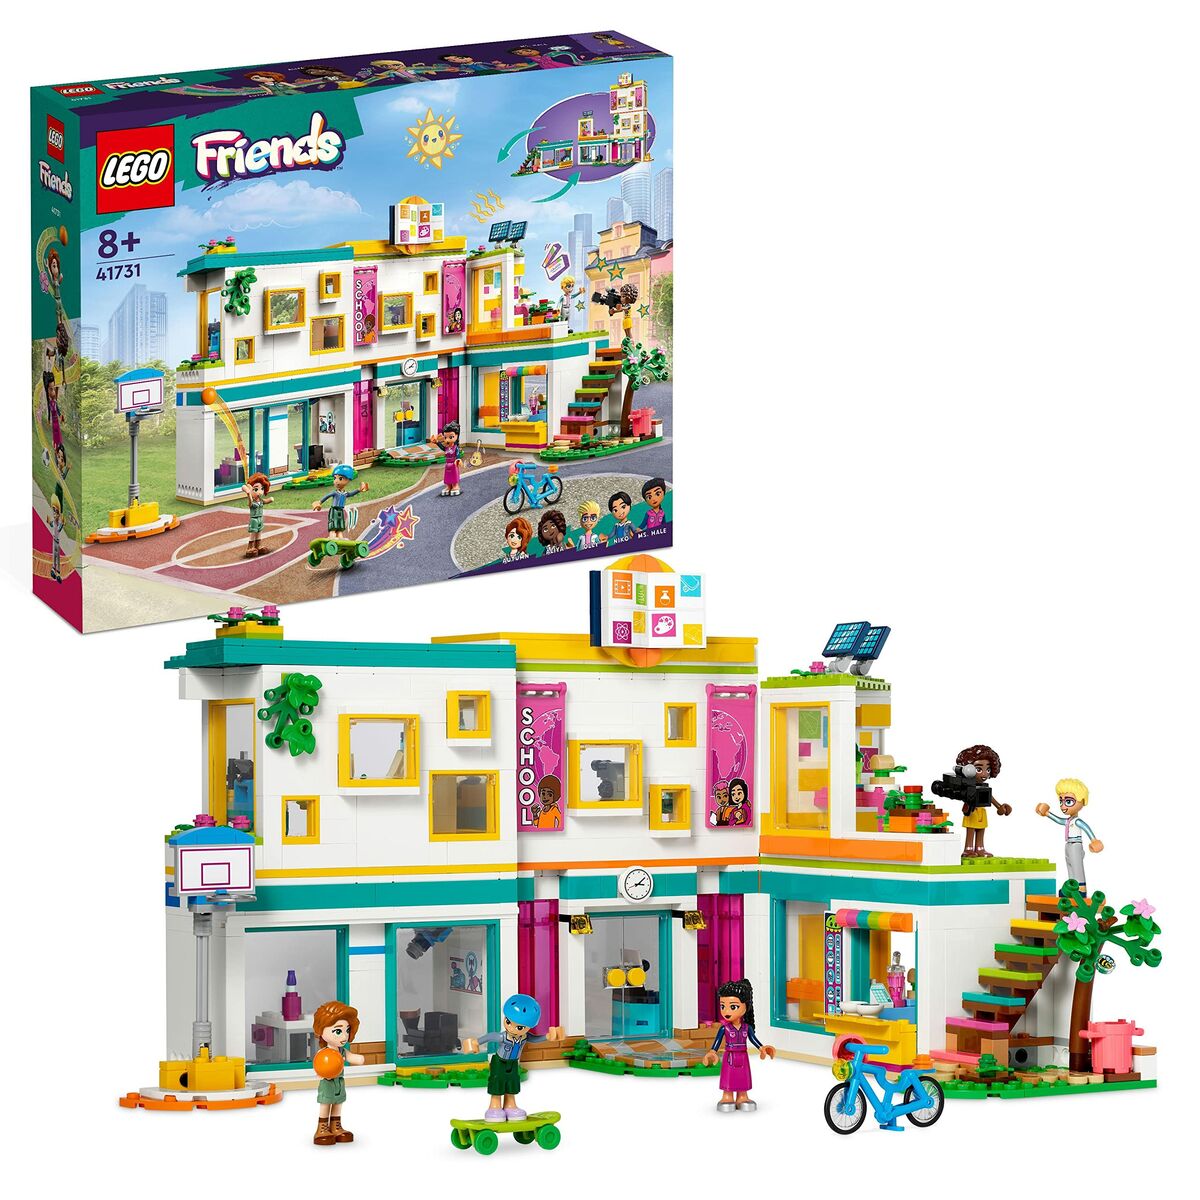 Playset Lego Friends 41731 985 Pezzi - Disponibile in 3-4 giorni lavorativi